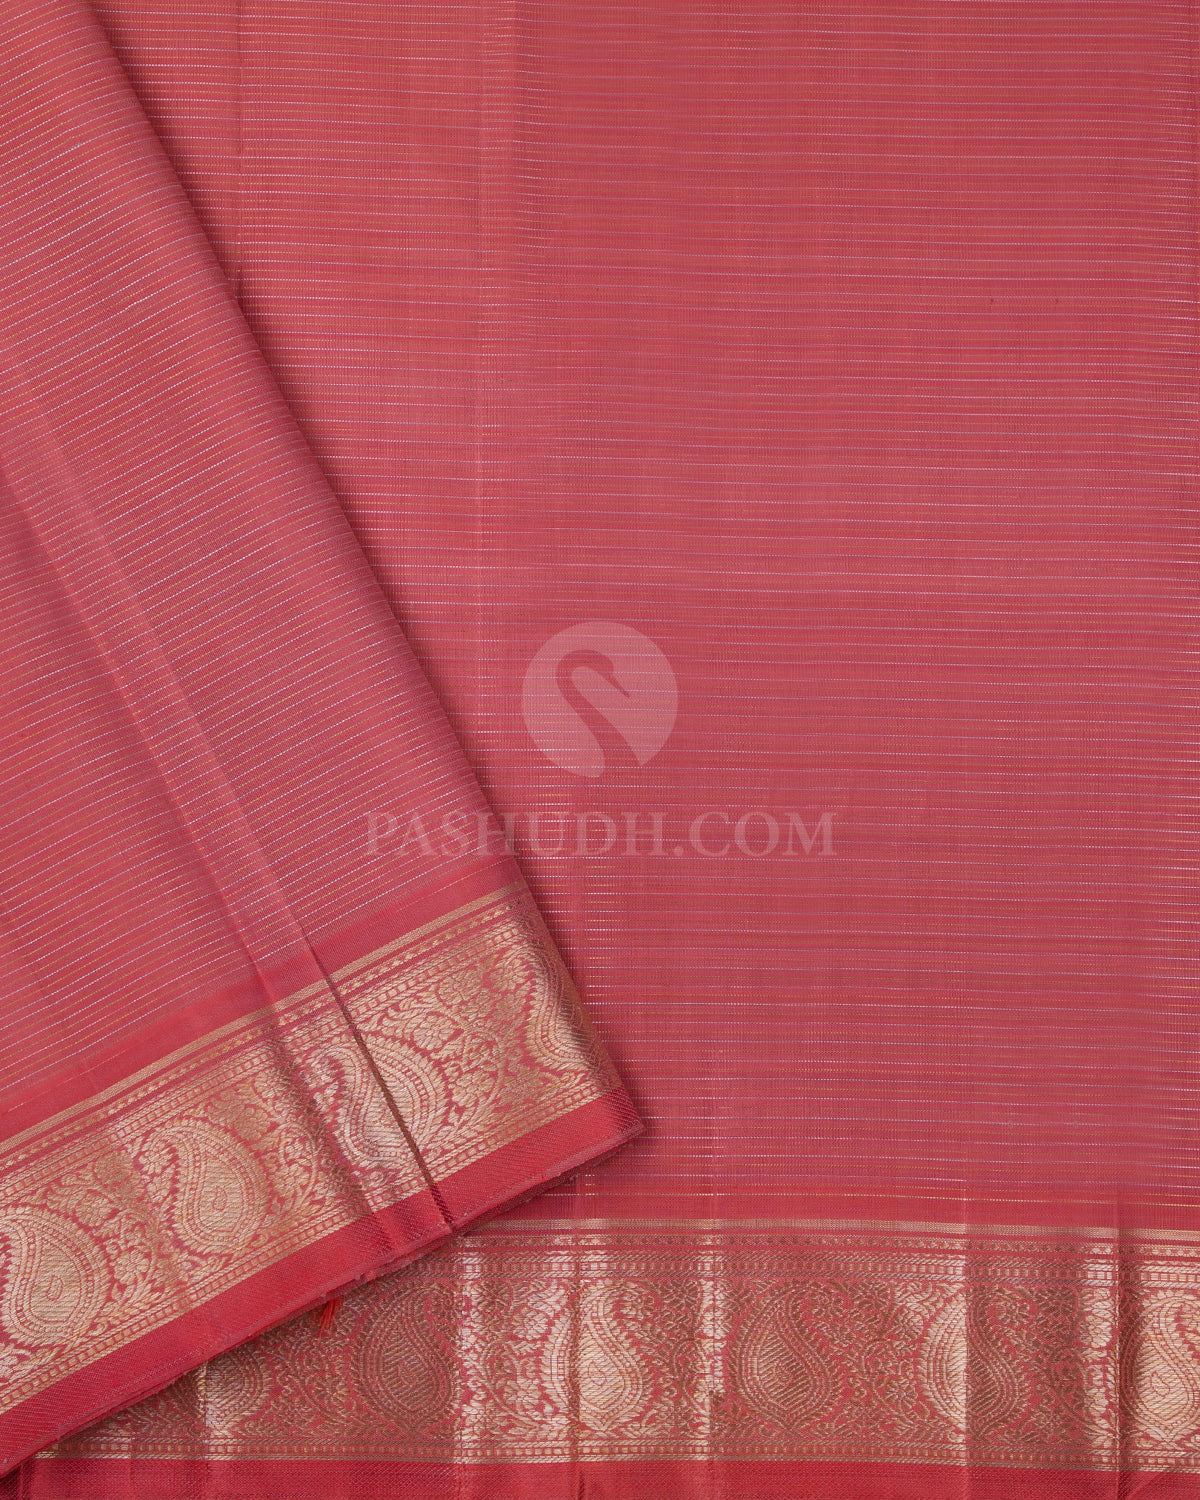 Multicolor Kanjivaram Silk Saree - S742- View 4